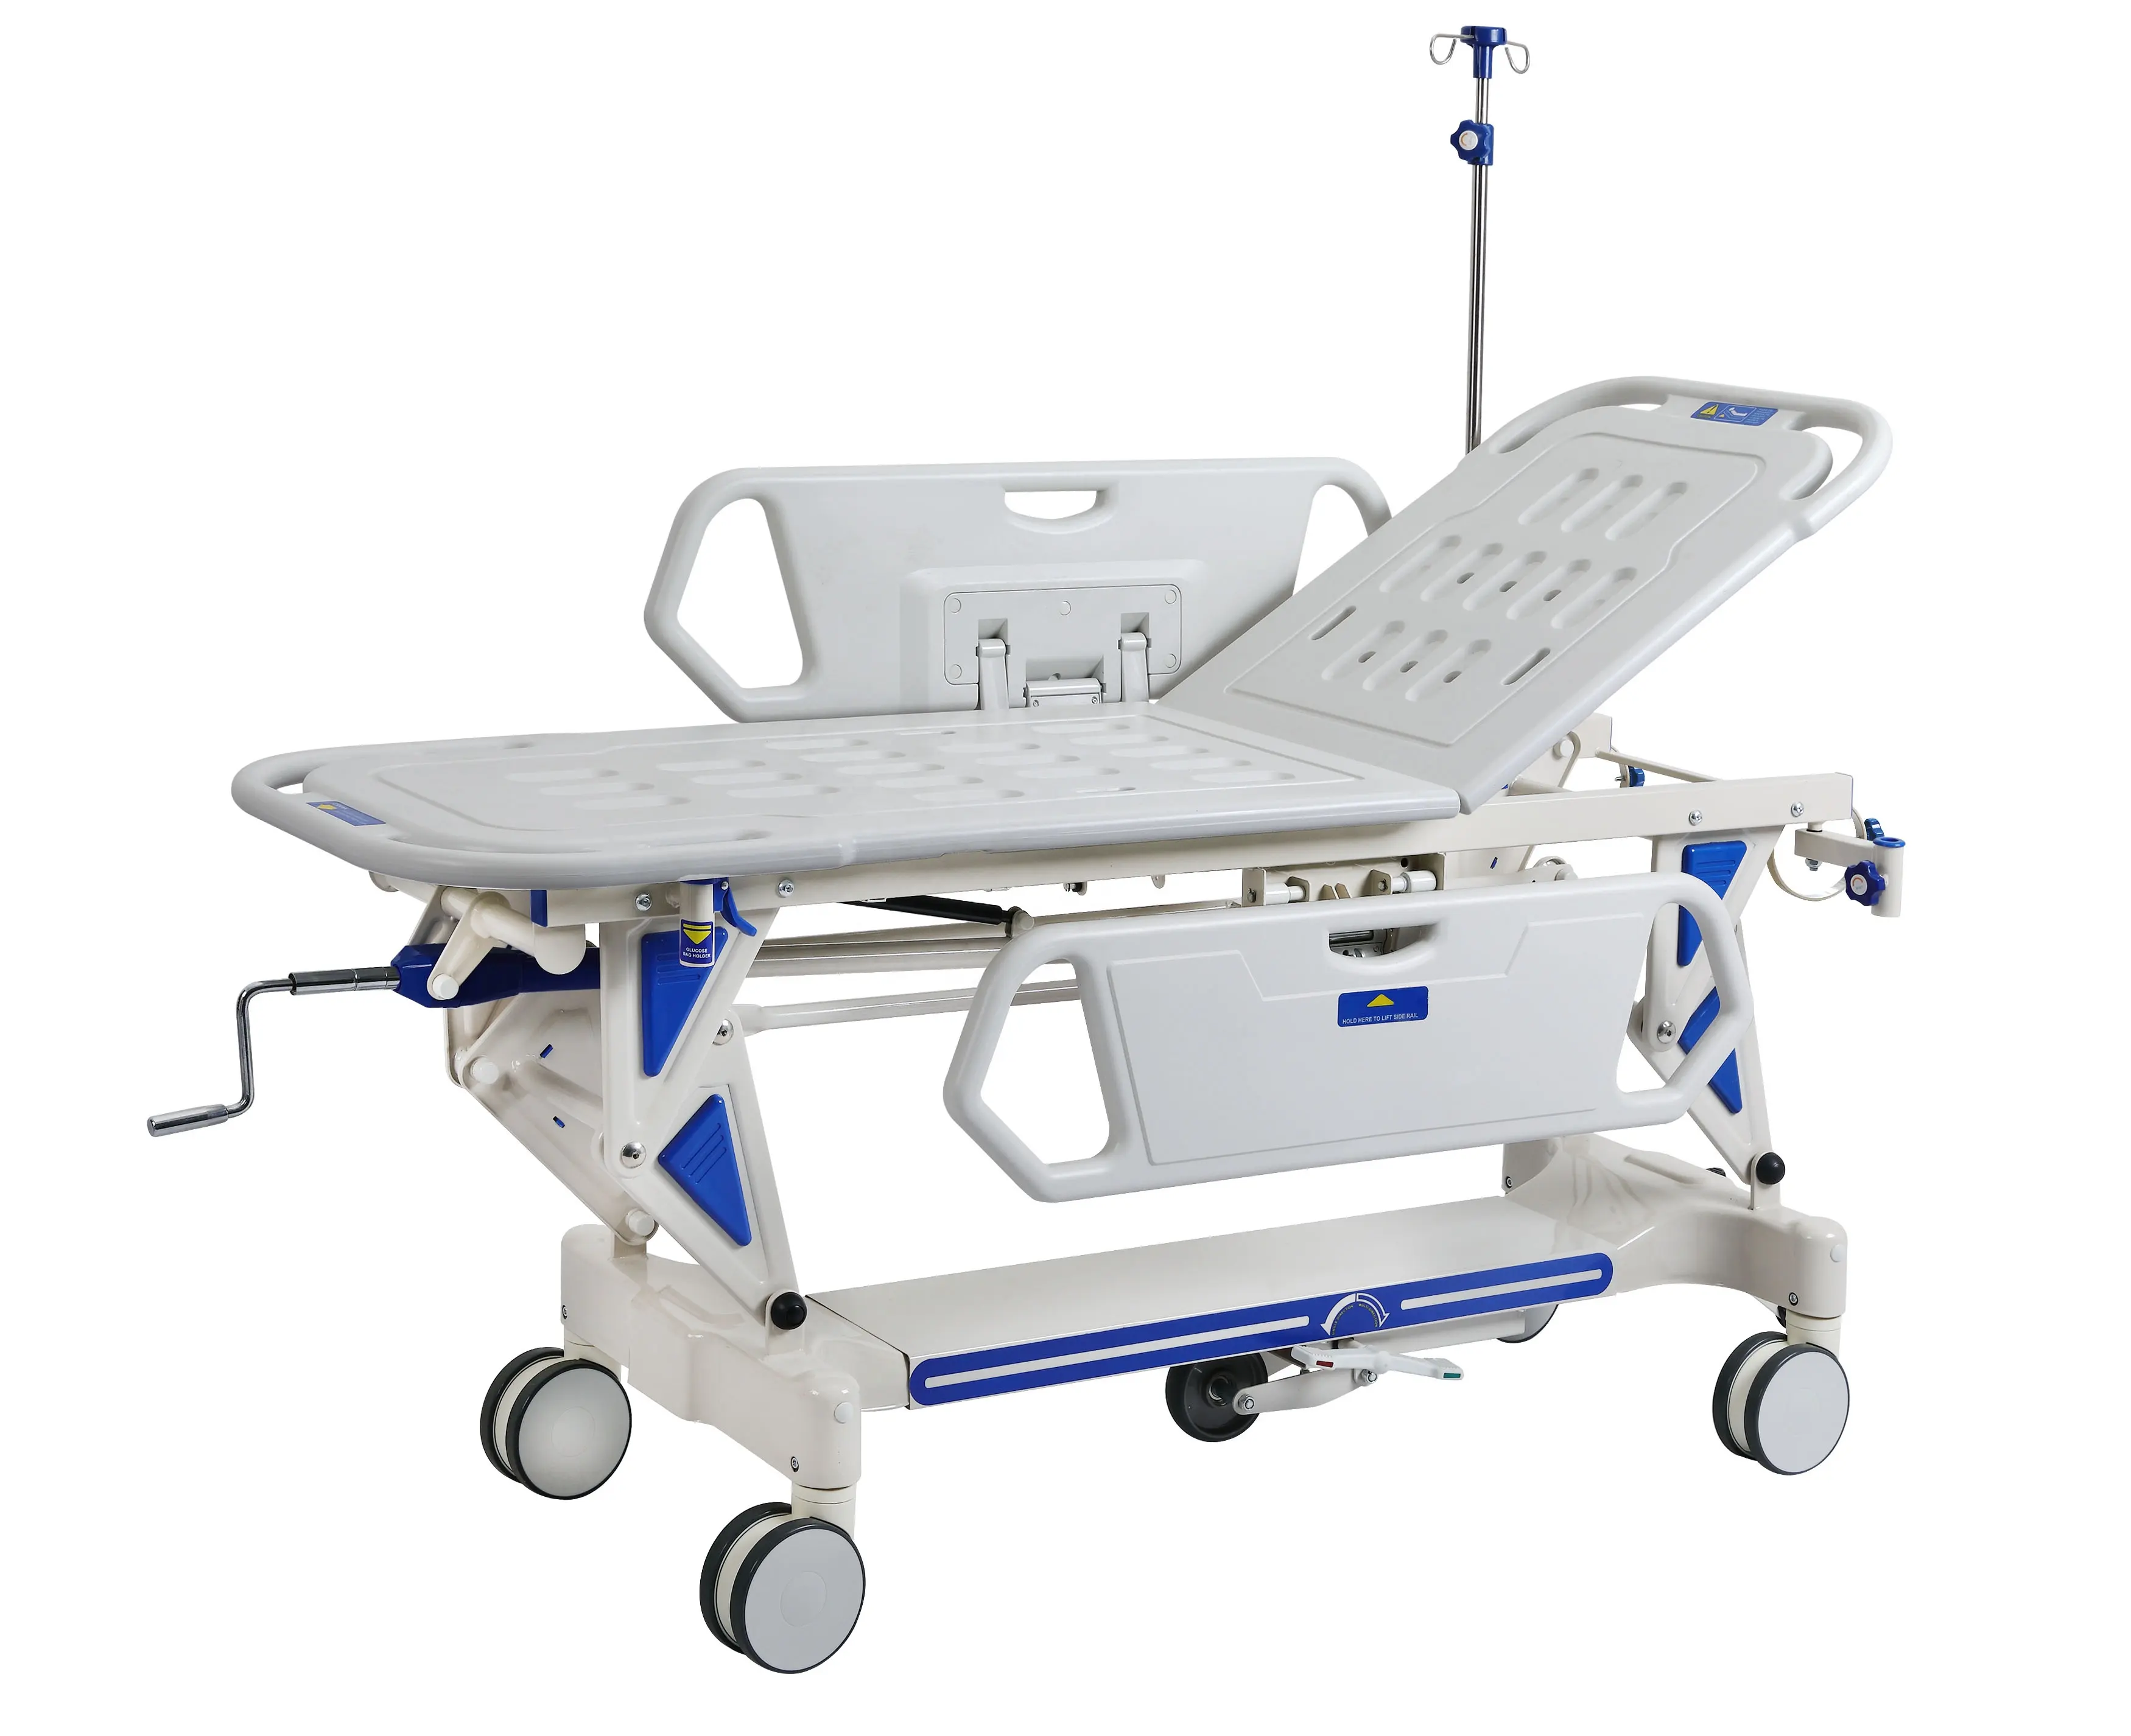 Prezzo all'ingrosso PP acciaio anziano ospedale assistenza domiciliare di cura regolabile letto medico con sedia a rotelle